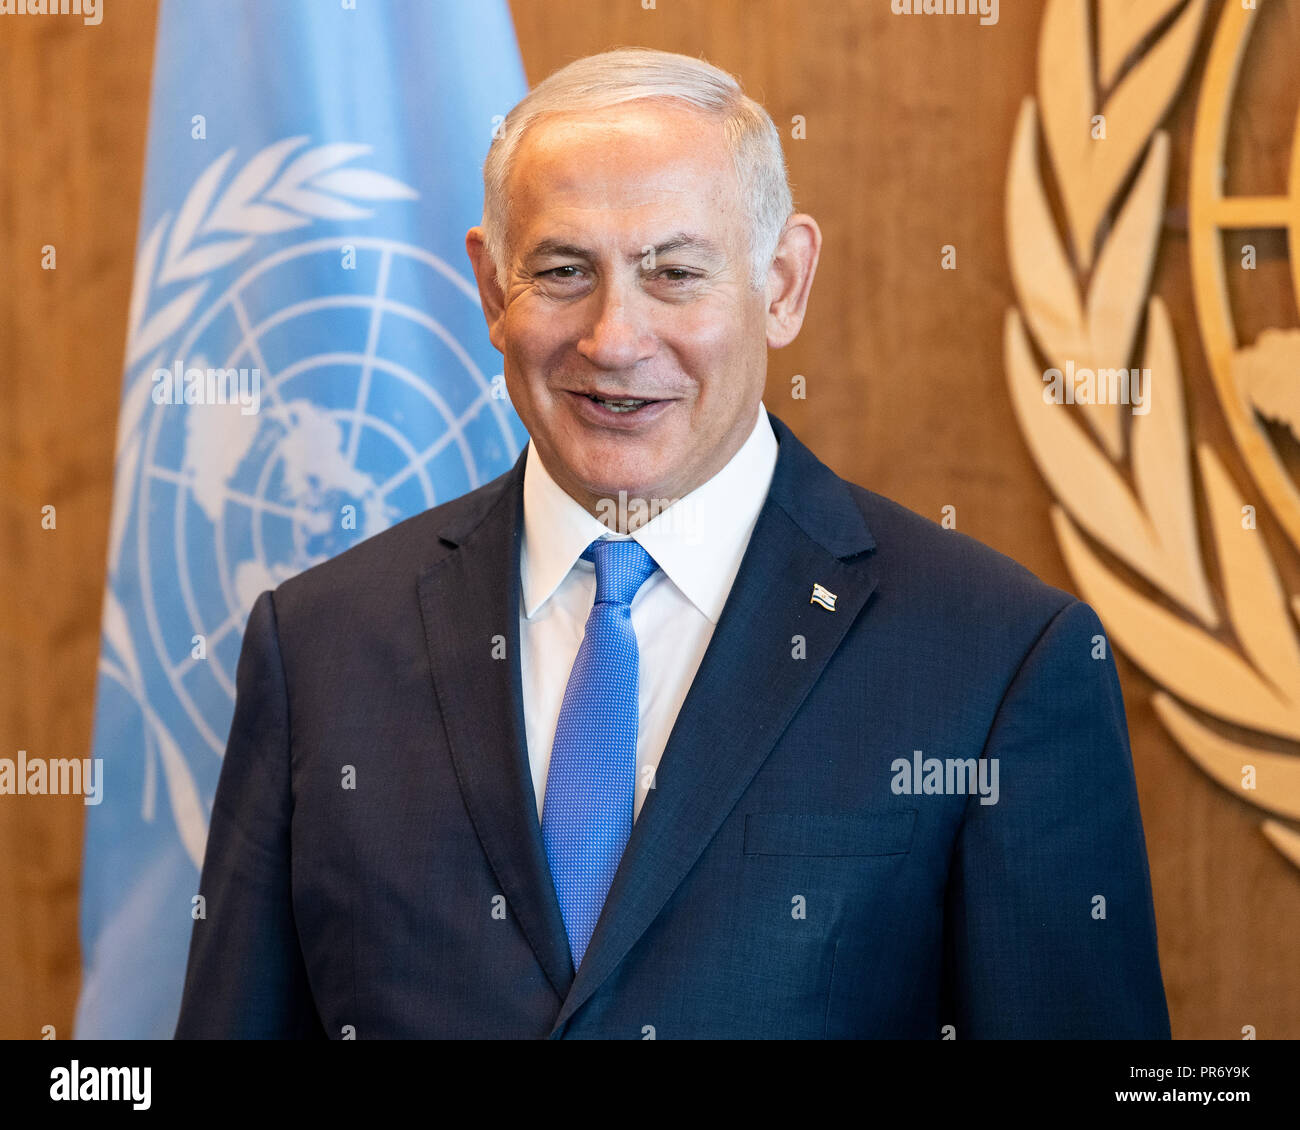 Benjamin Netanyahu, Premier Ministre d'Israël vu à l'Assemblée générale des Nations Unies Débat général de l'Organisation des Nations Unies à New York. Banque D'Images